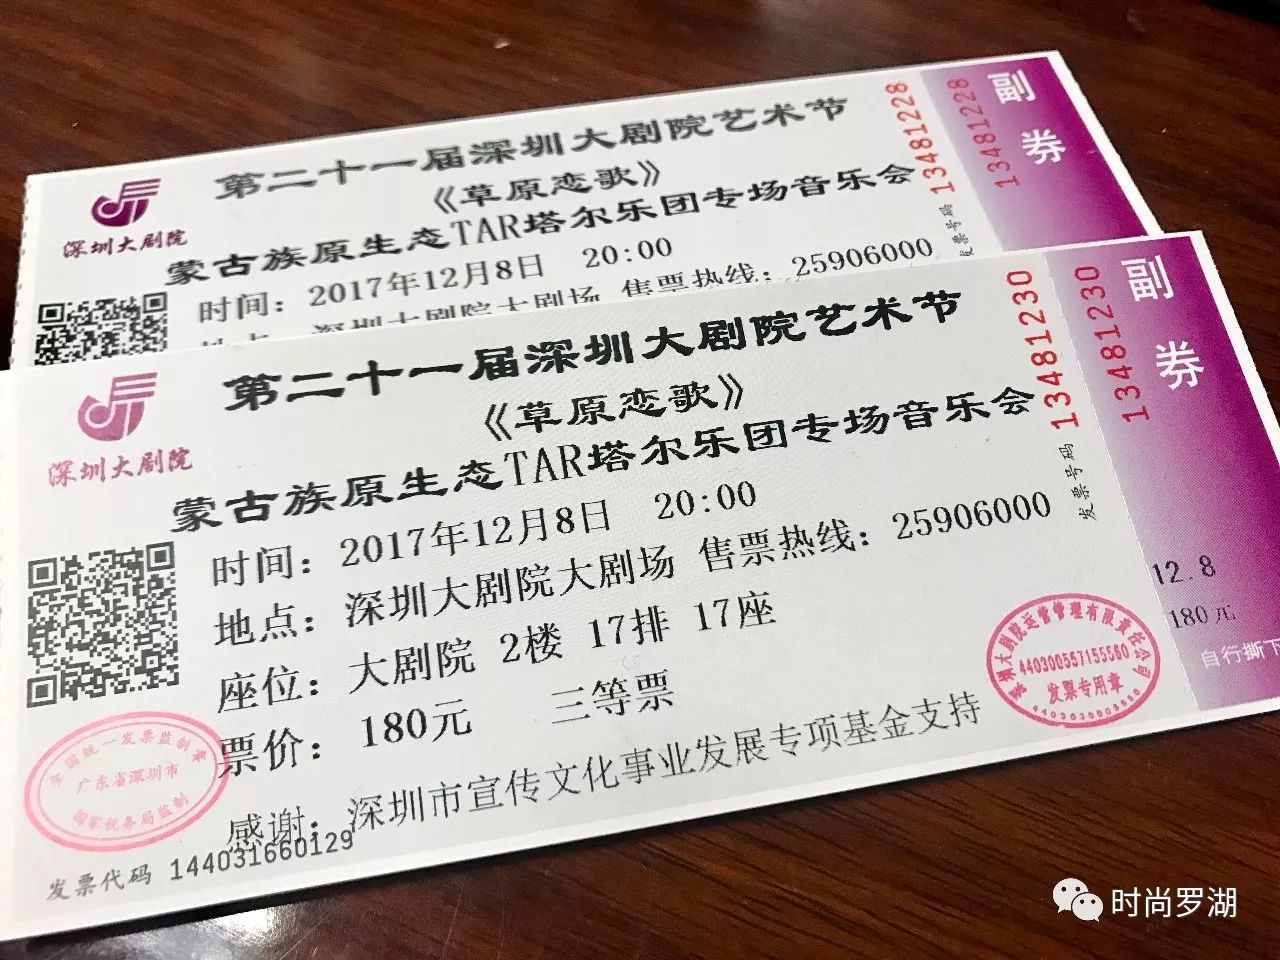 送票| 《草原恋歌》蒙古族乐团专场音乐会门票免费送!